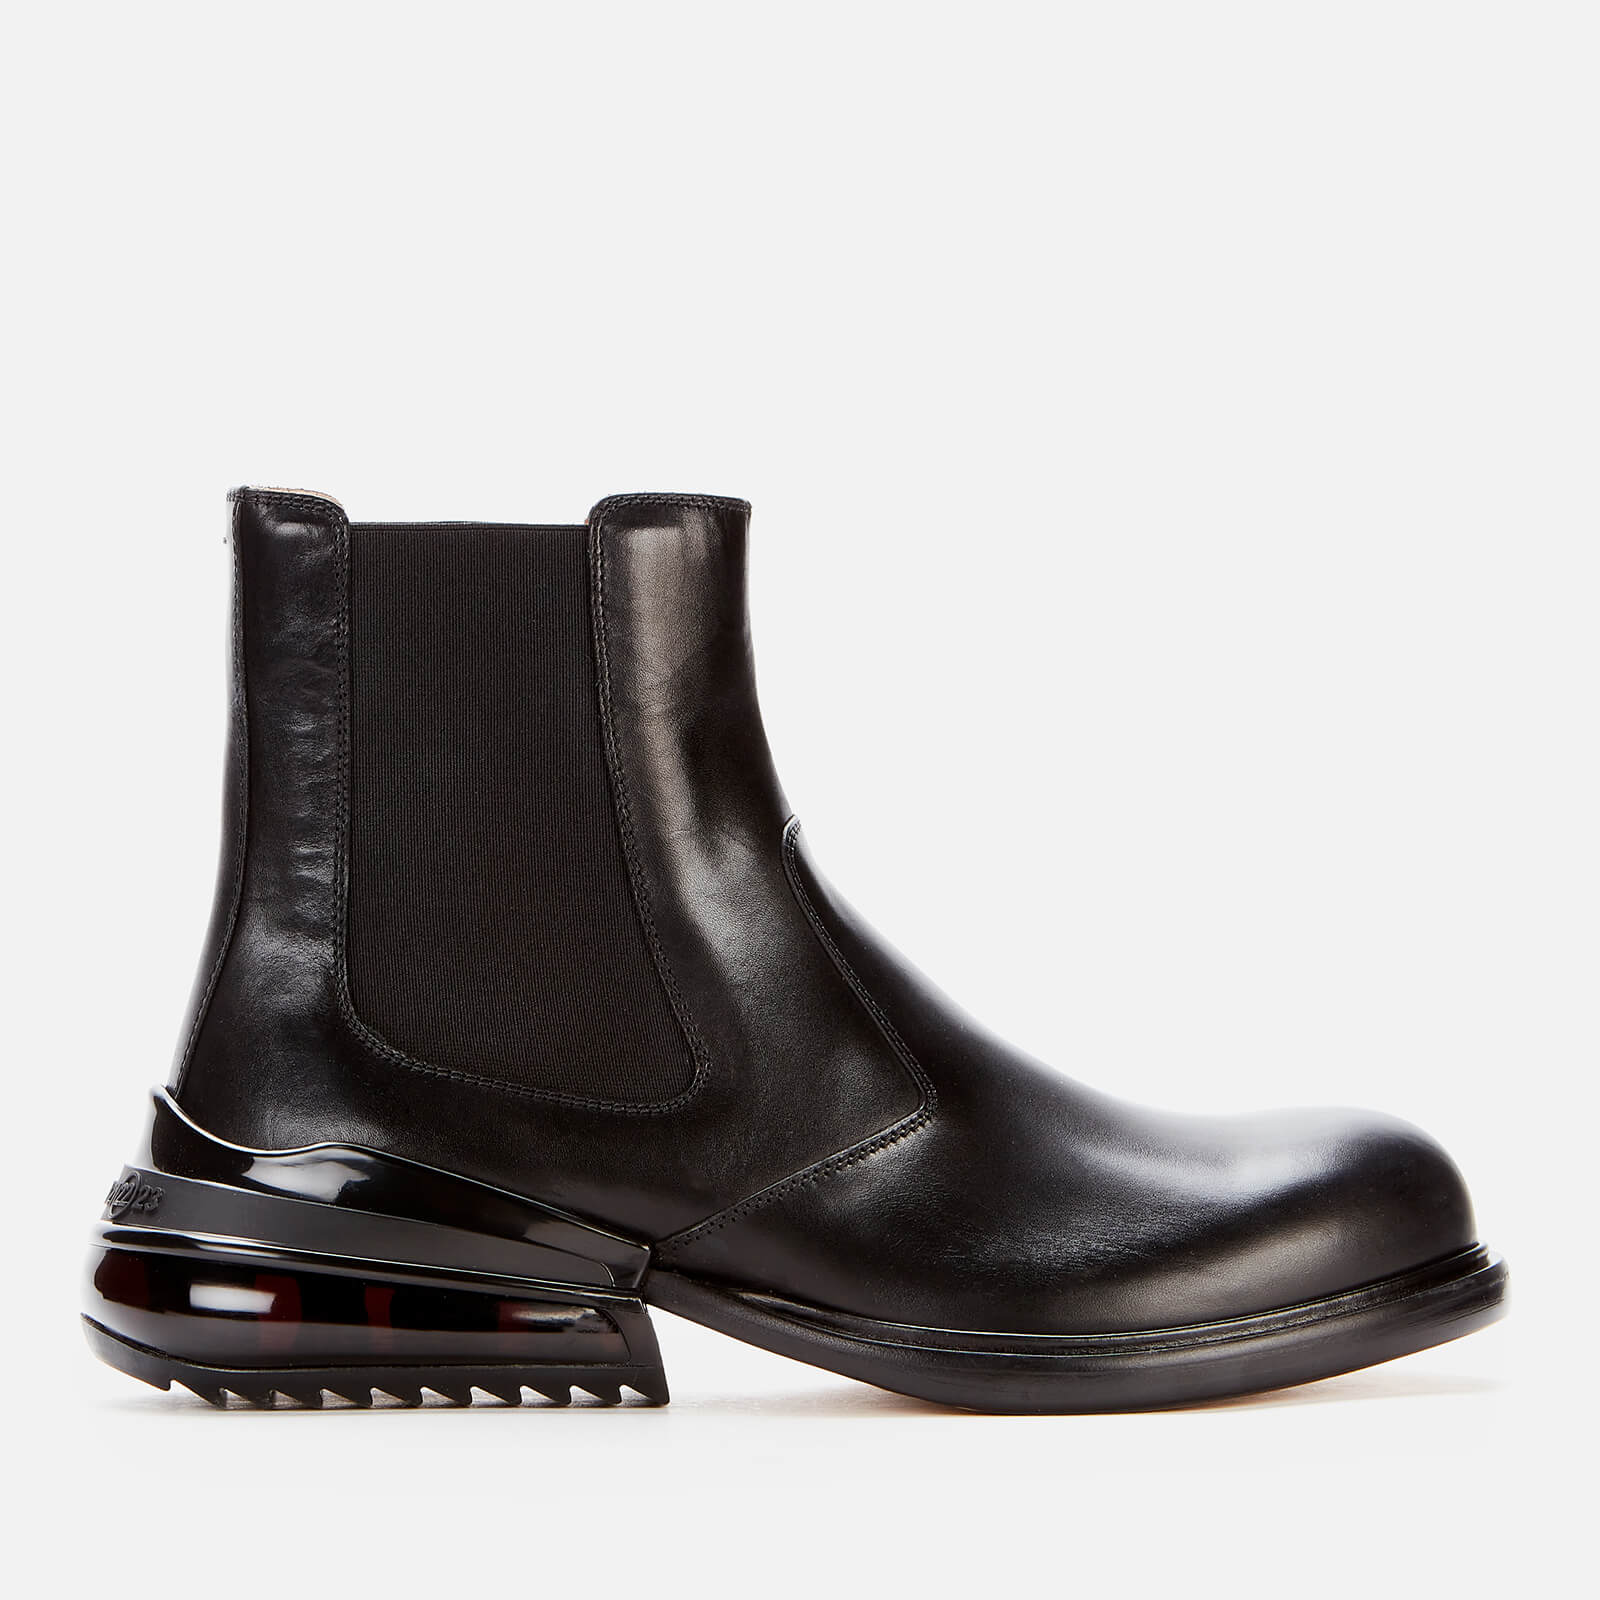 Maison Margiela Men's Leather Chelsea Boots - Black/Shiny Black - UK 7